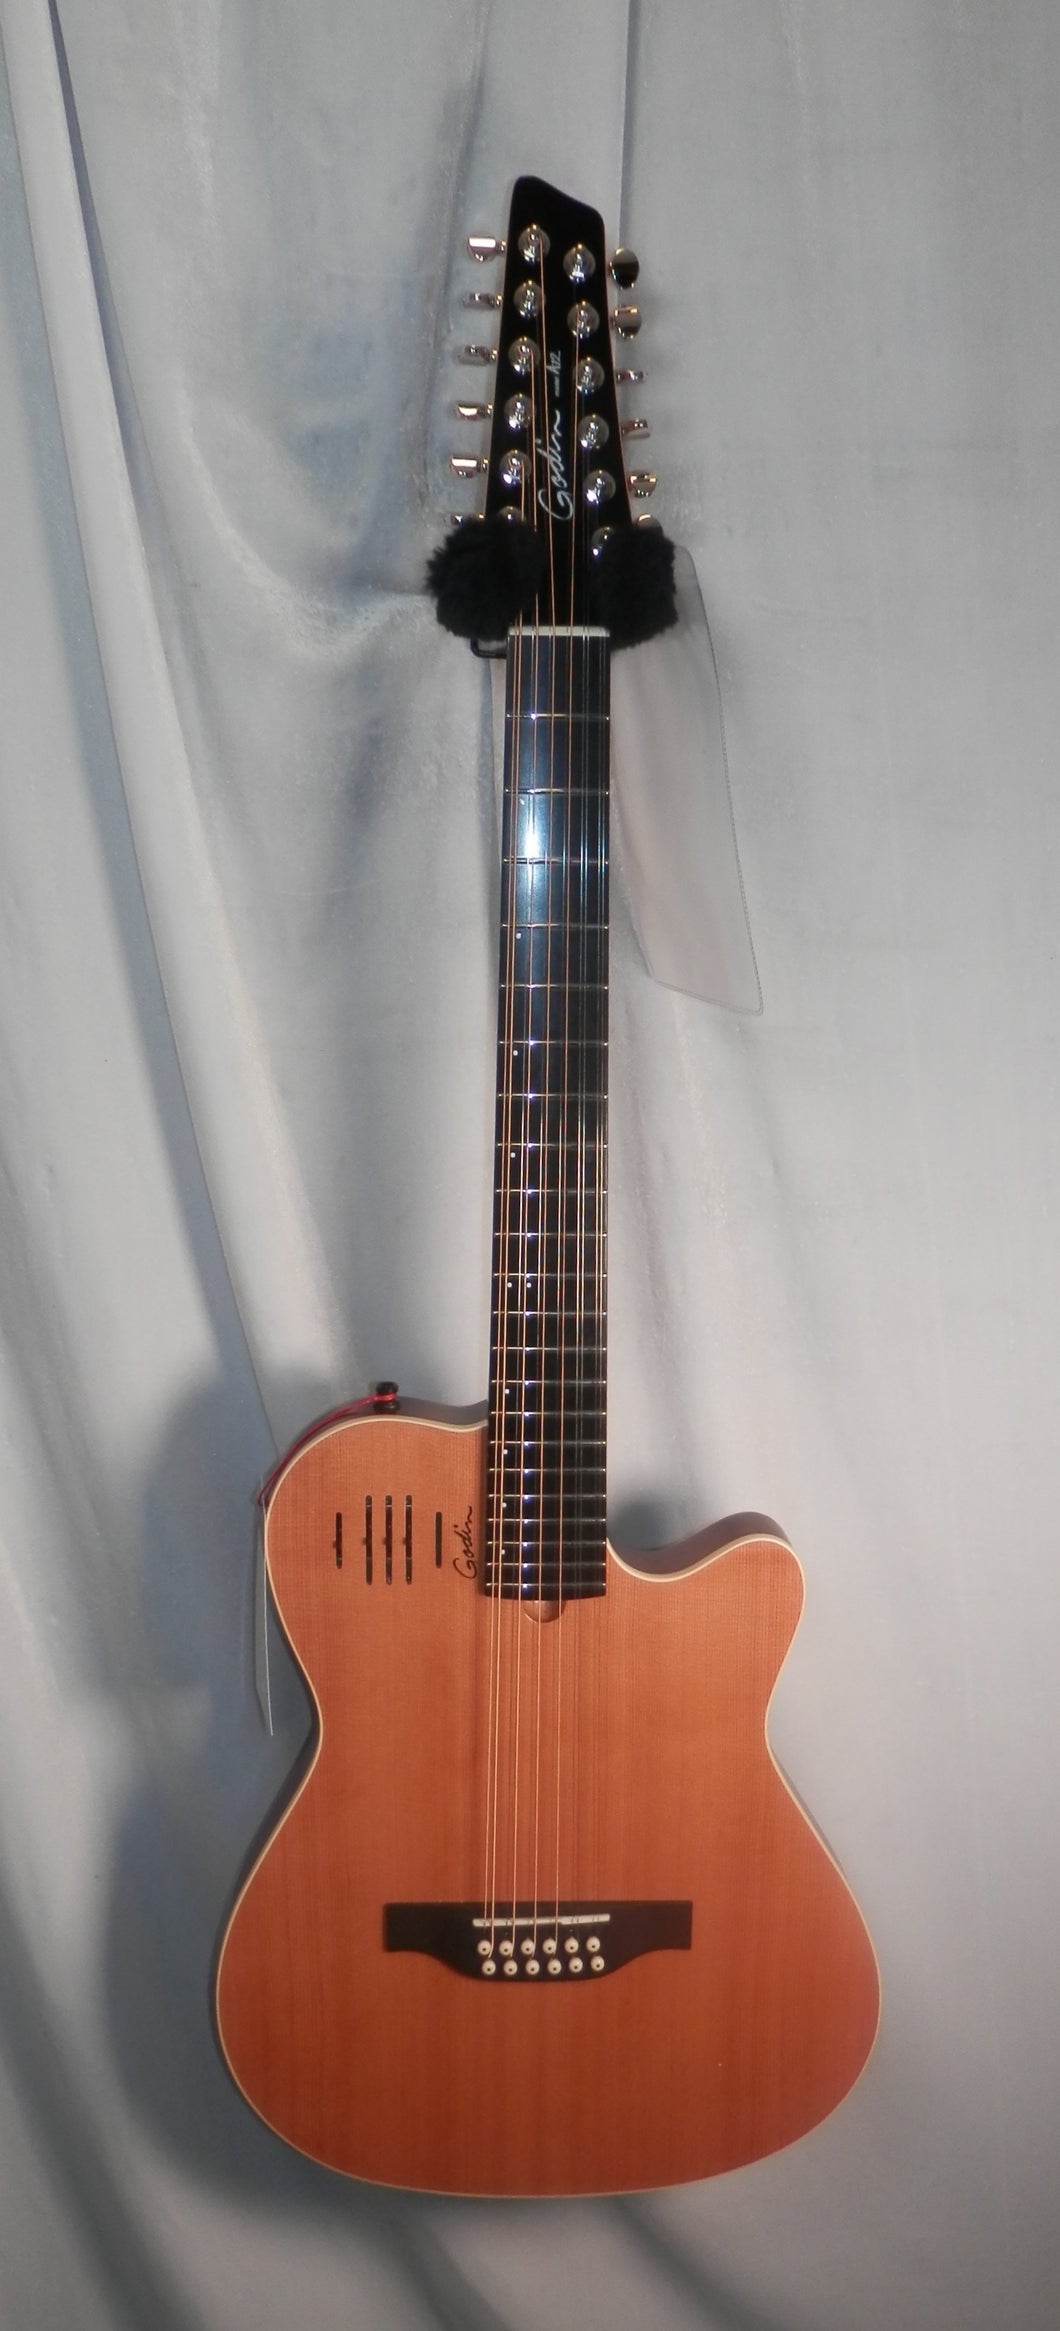 Godin 025343 A12 Natural SG Solid Cedar 12 string steel string guitar with gig bag